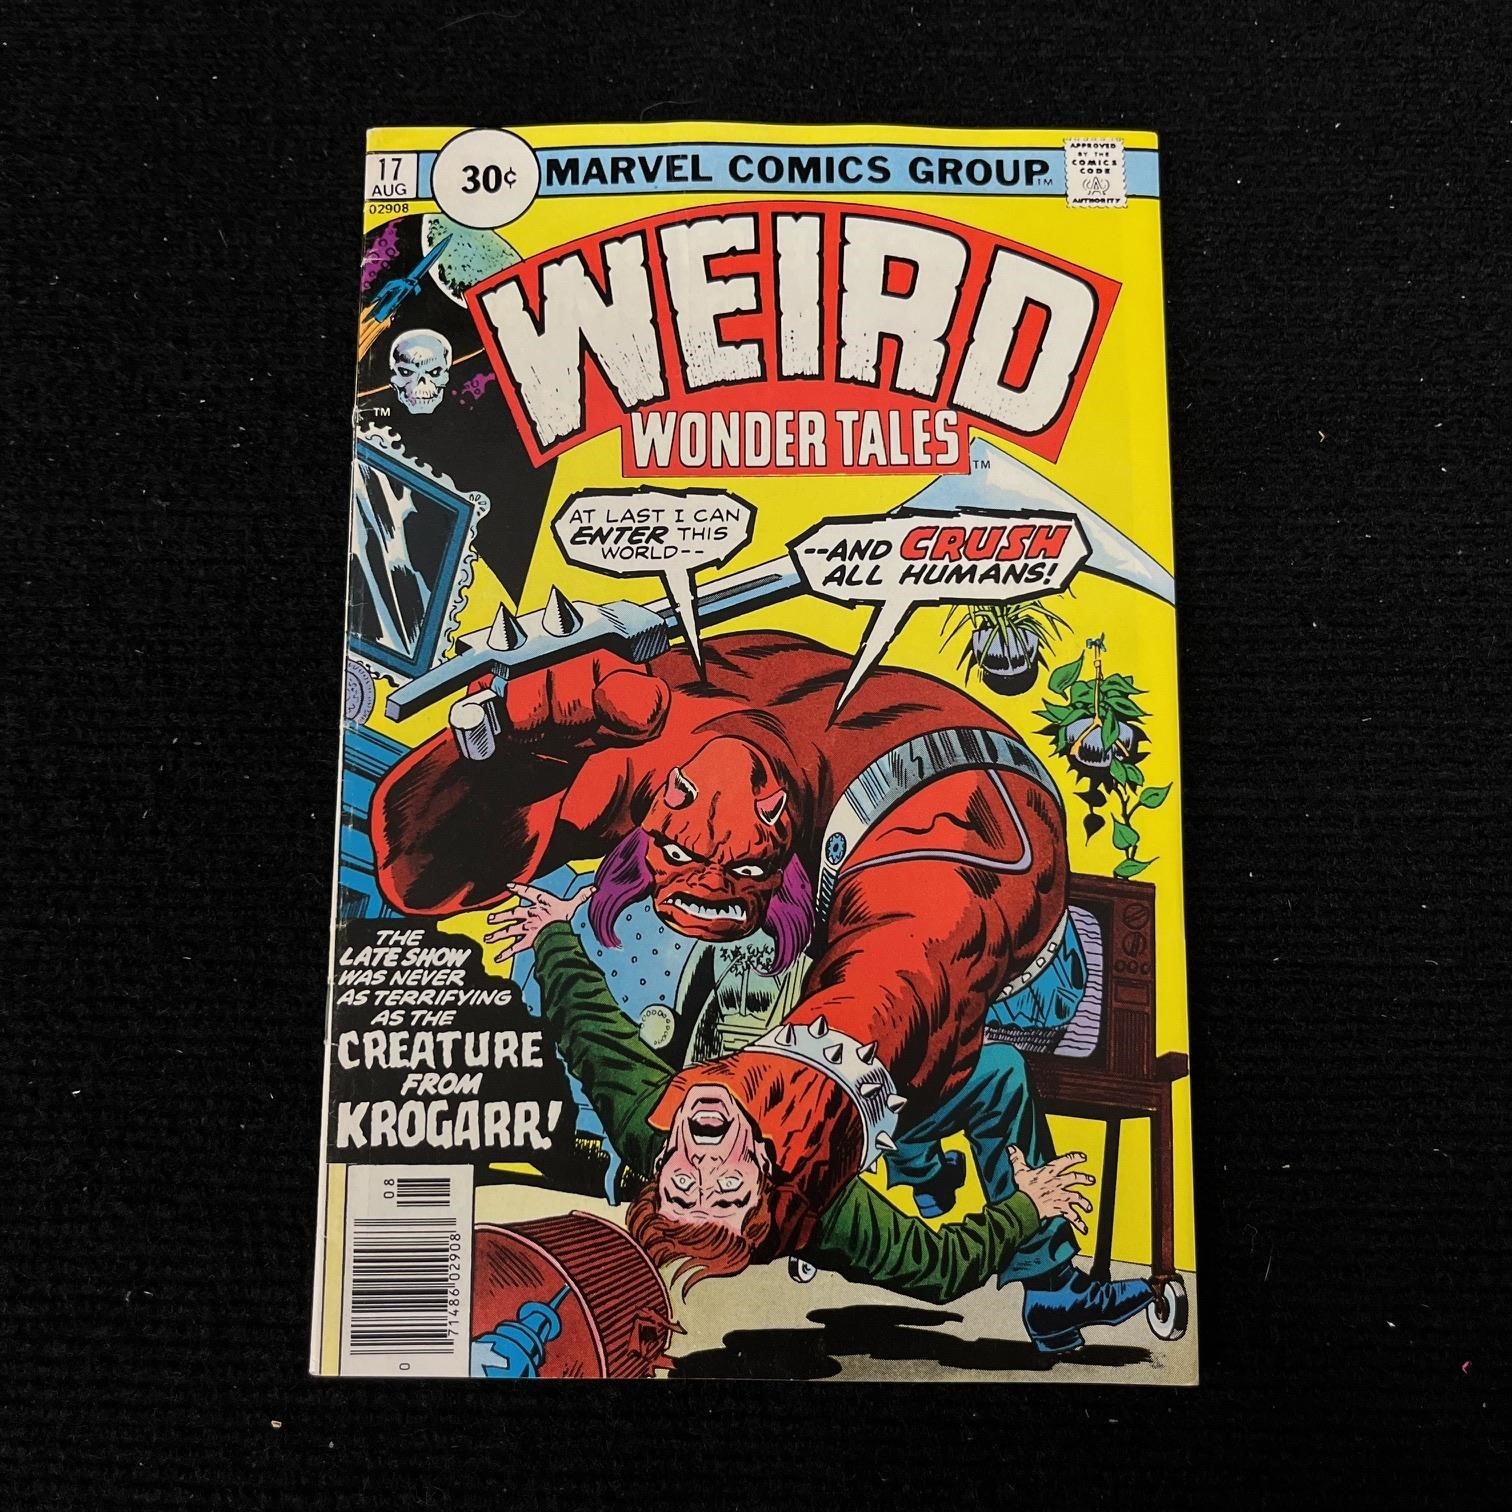 June Comic Wonderland Auction